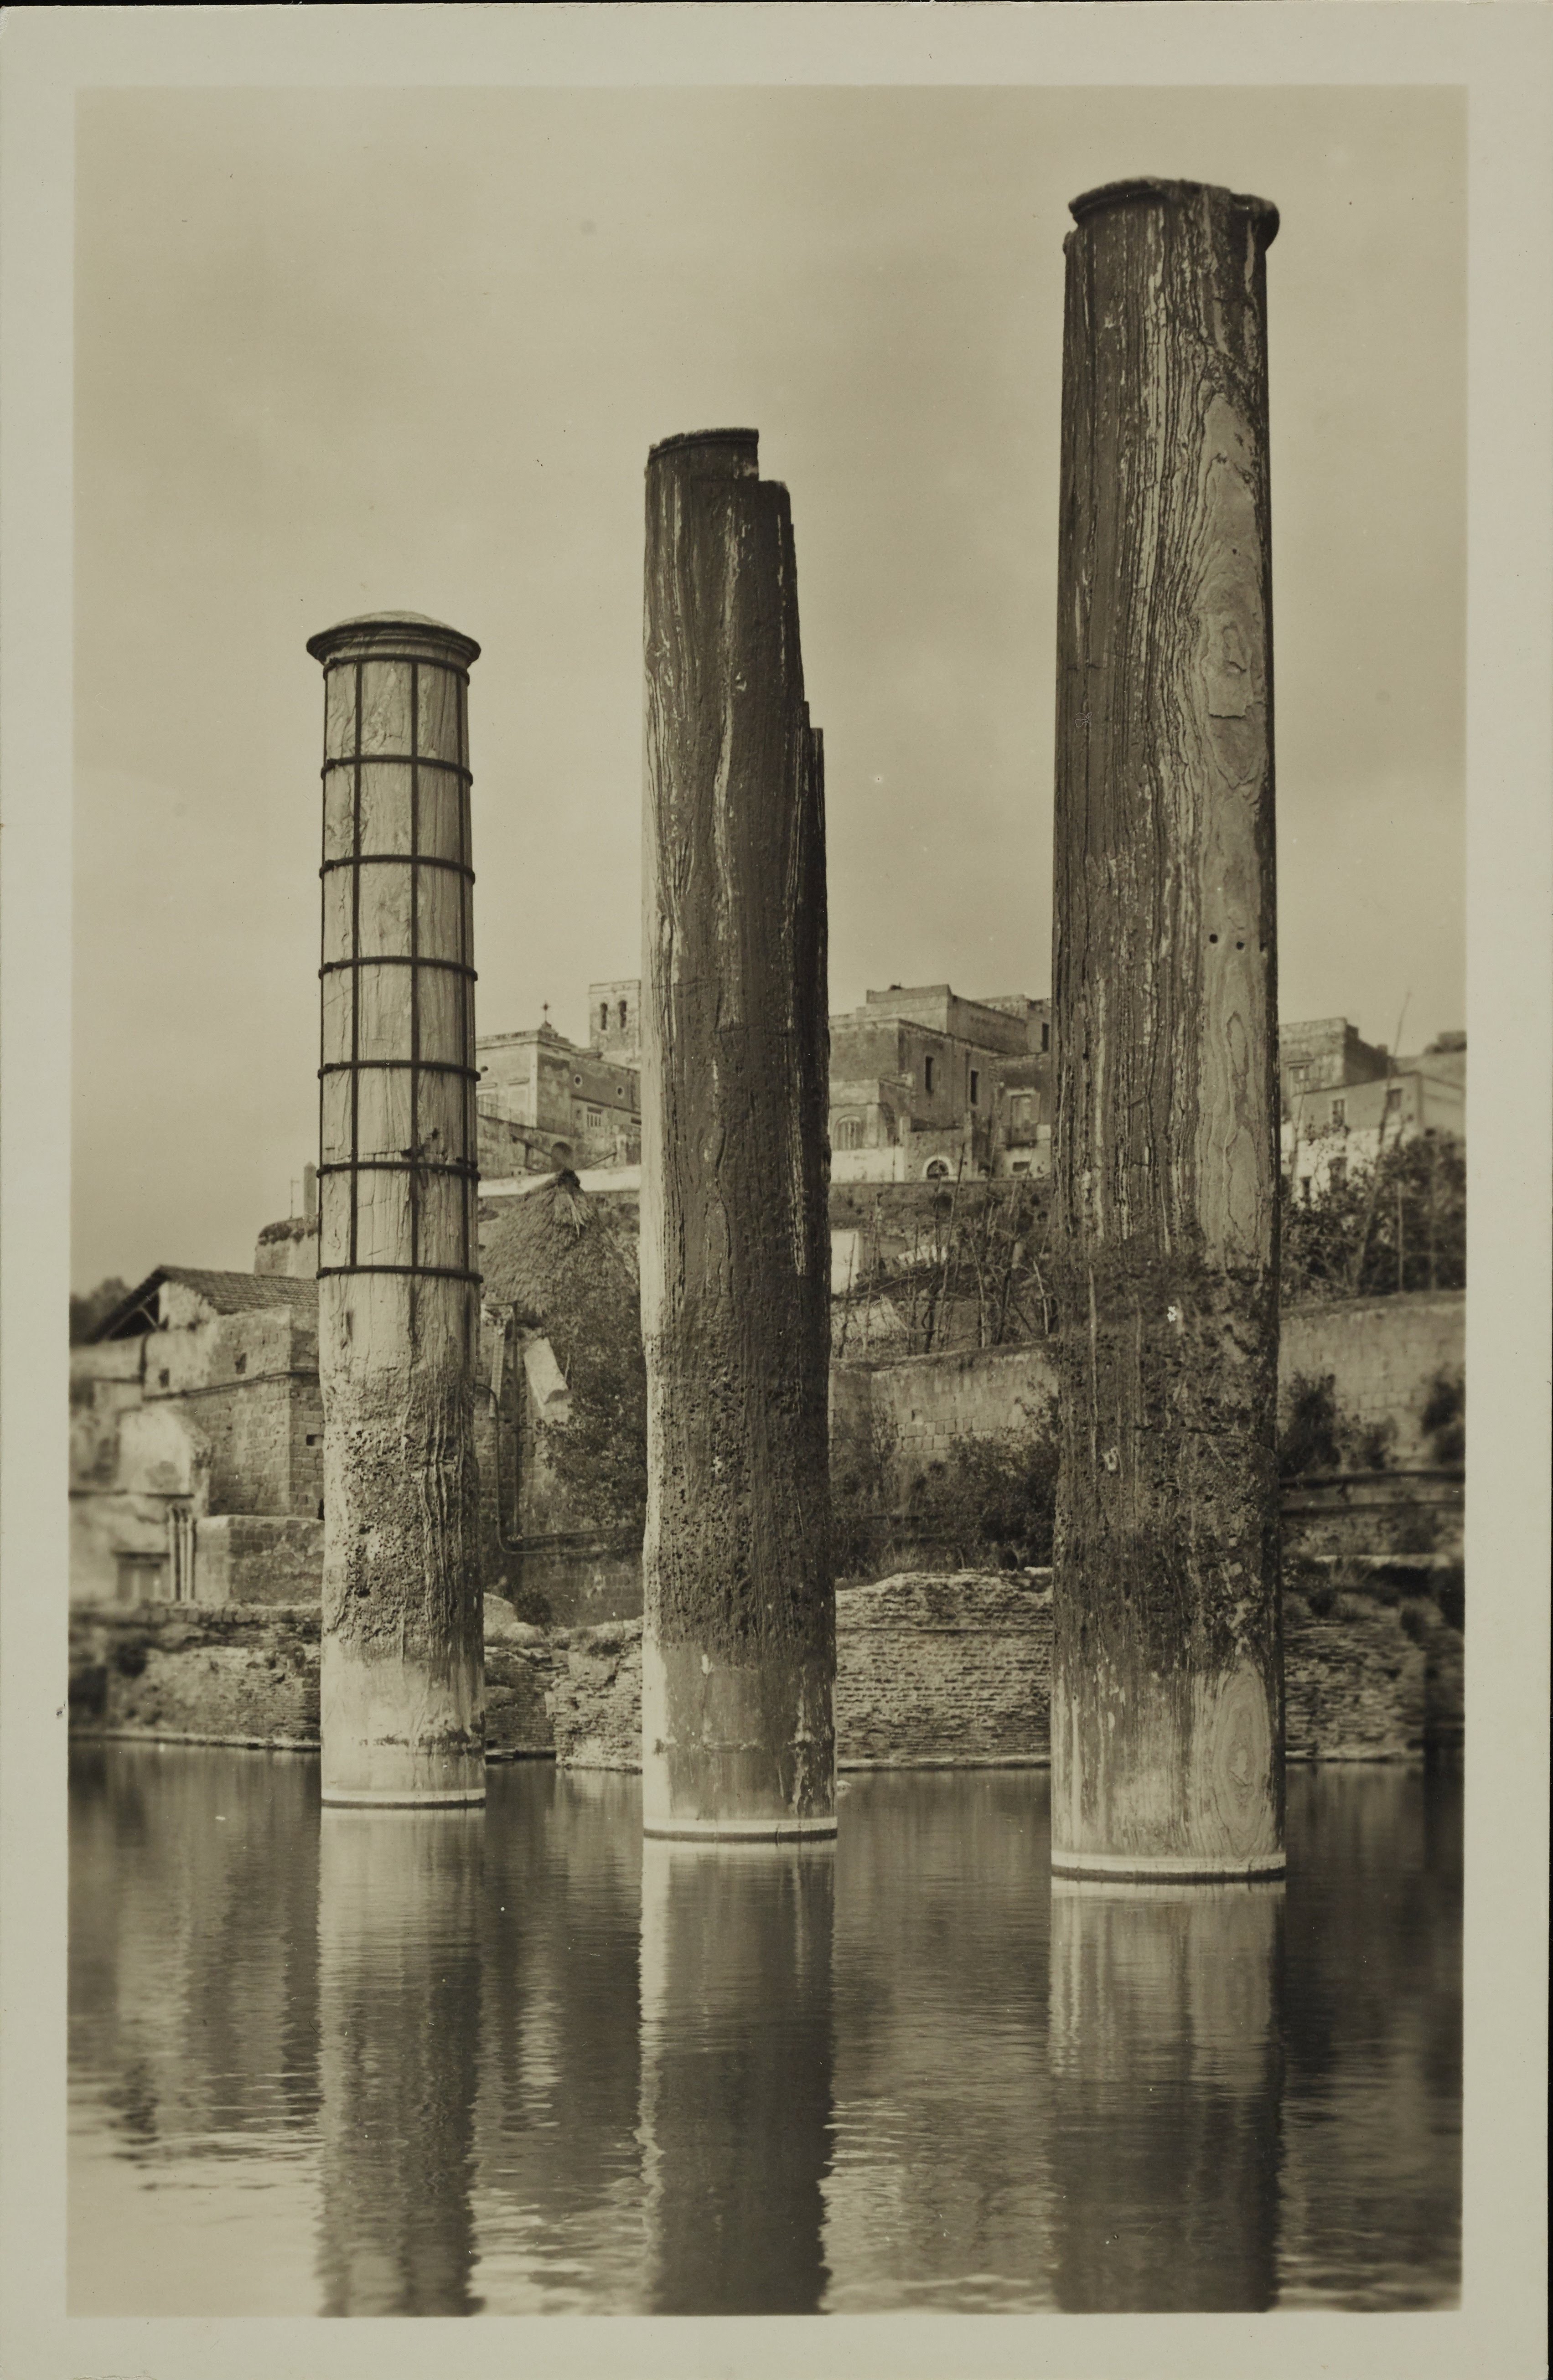 Morpurgo, Luciano, Pozzuoli - Tempio di Serapide o Macellum, colonne, 1901-1925, gelatina ai sali d'argento, MPI6014322